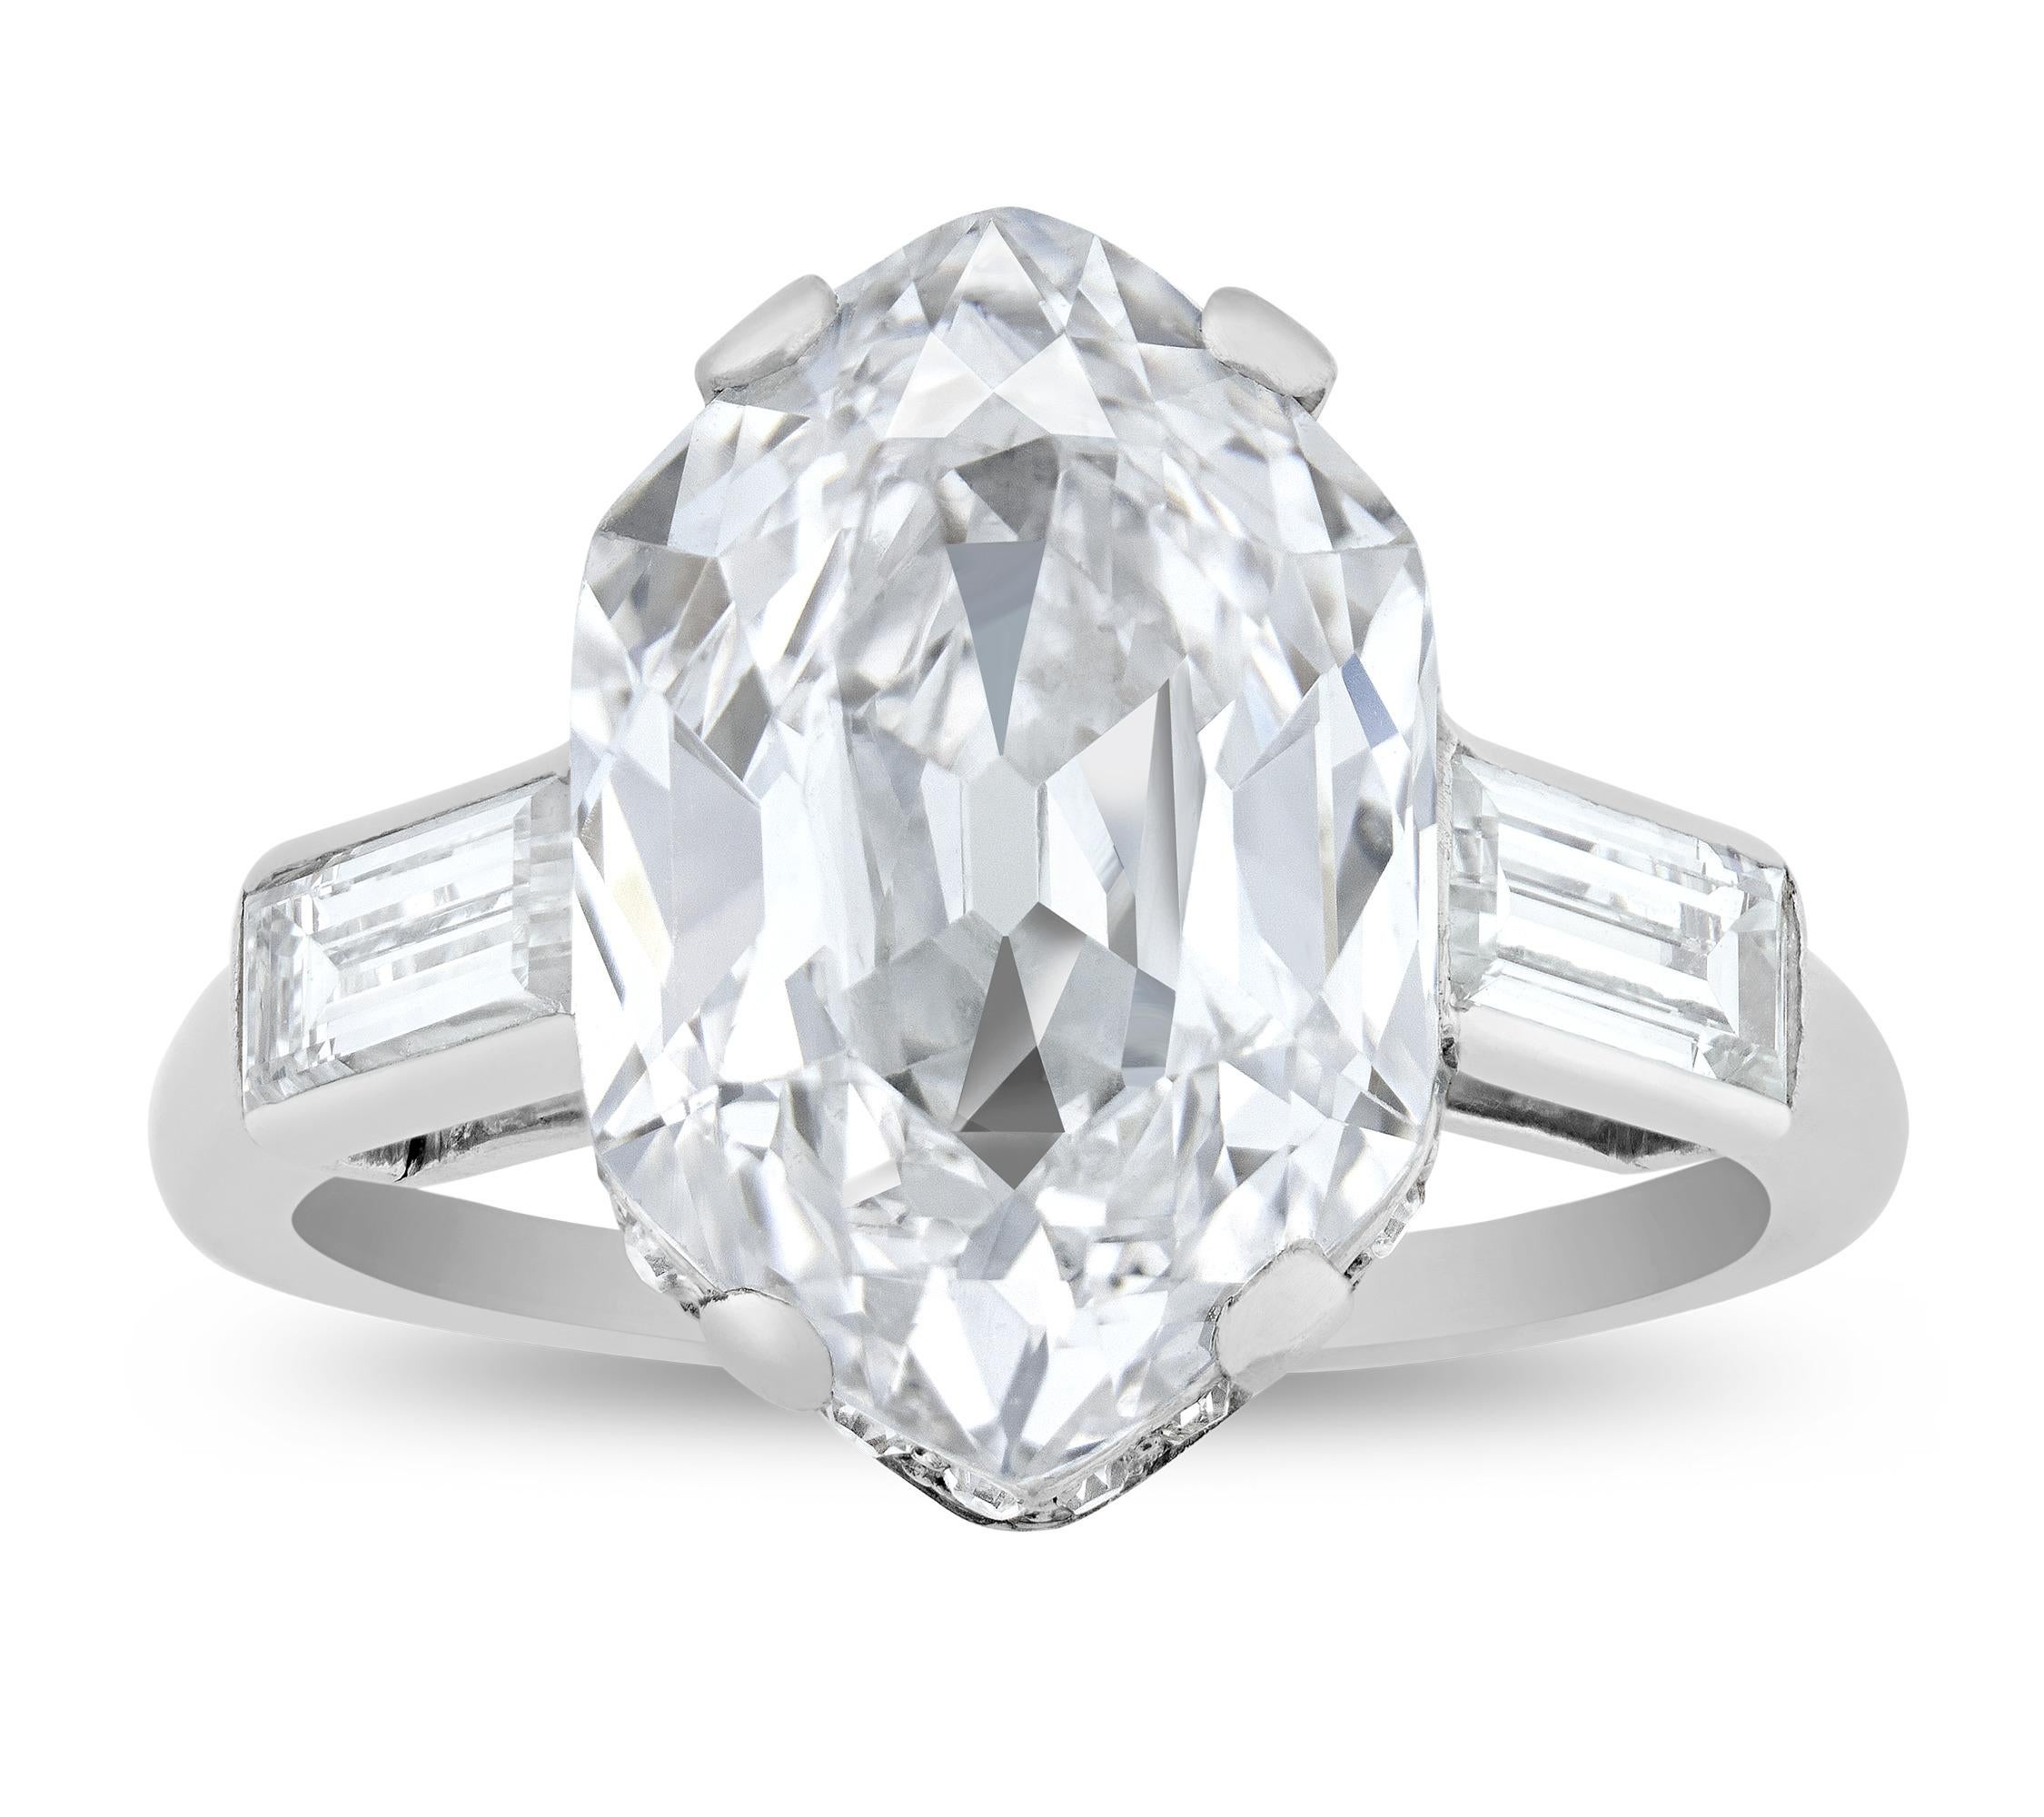 Spektakuläre Farbe, Reinheit und Seltenheit zeichnen den 4,33-Karat-Diamanten in diesem Ring des famosen Juweliers Cartier aus der Zeit des Art déco aus. Der aufgrund seiner sechseckigen Form einzigartige Diamant ist vom Gemological Institute of